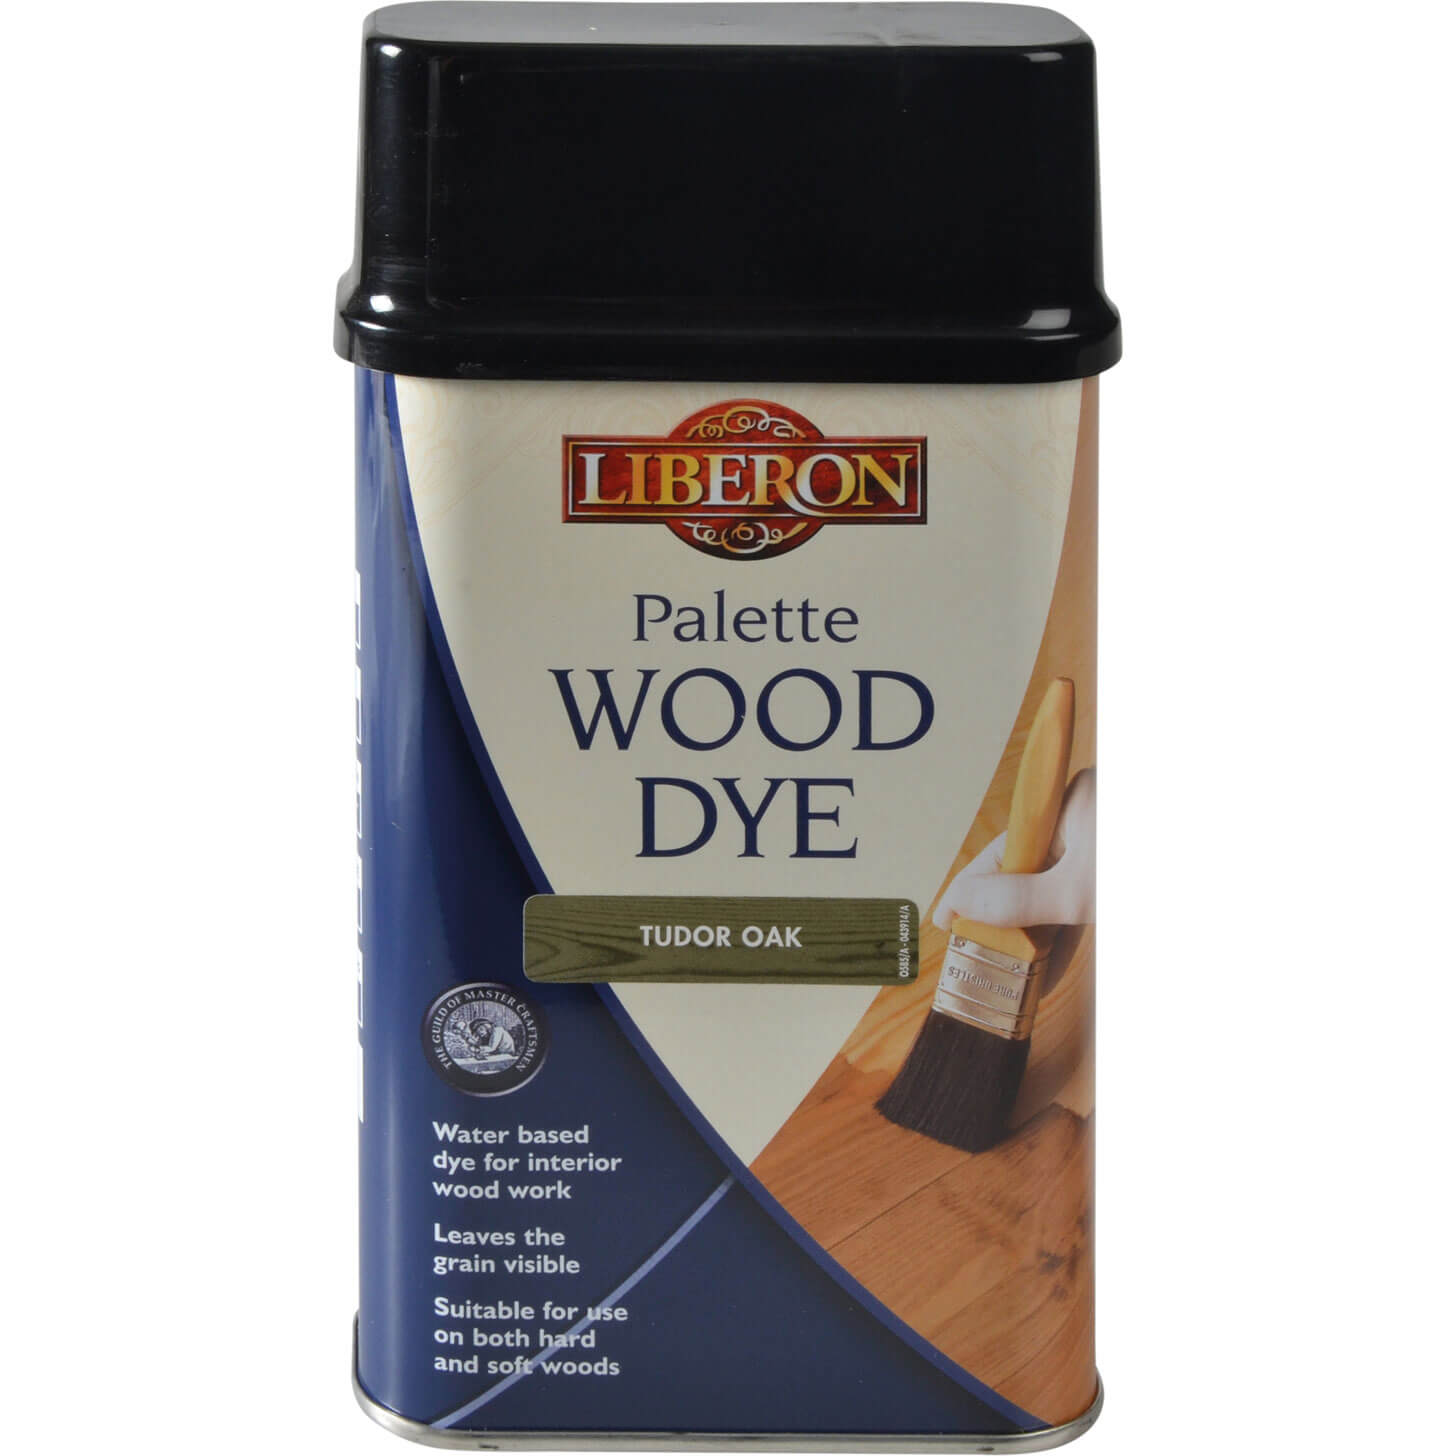 Photos - Varnish Liberon Palette Wood Dye Tudor Oak 500ml 